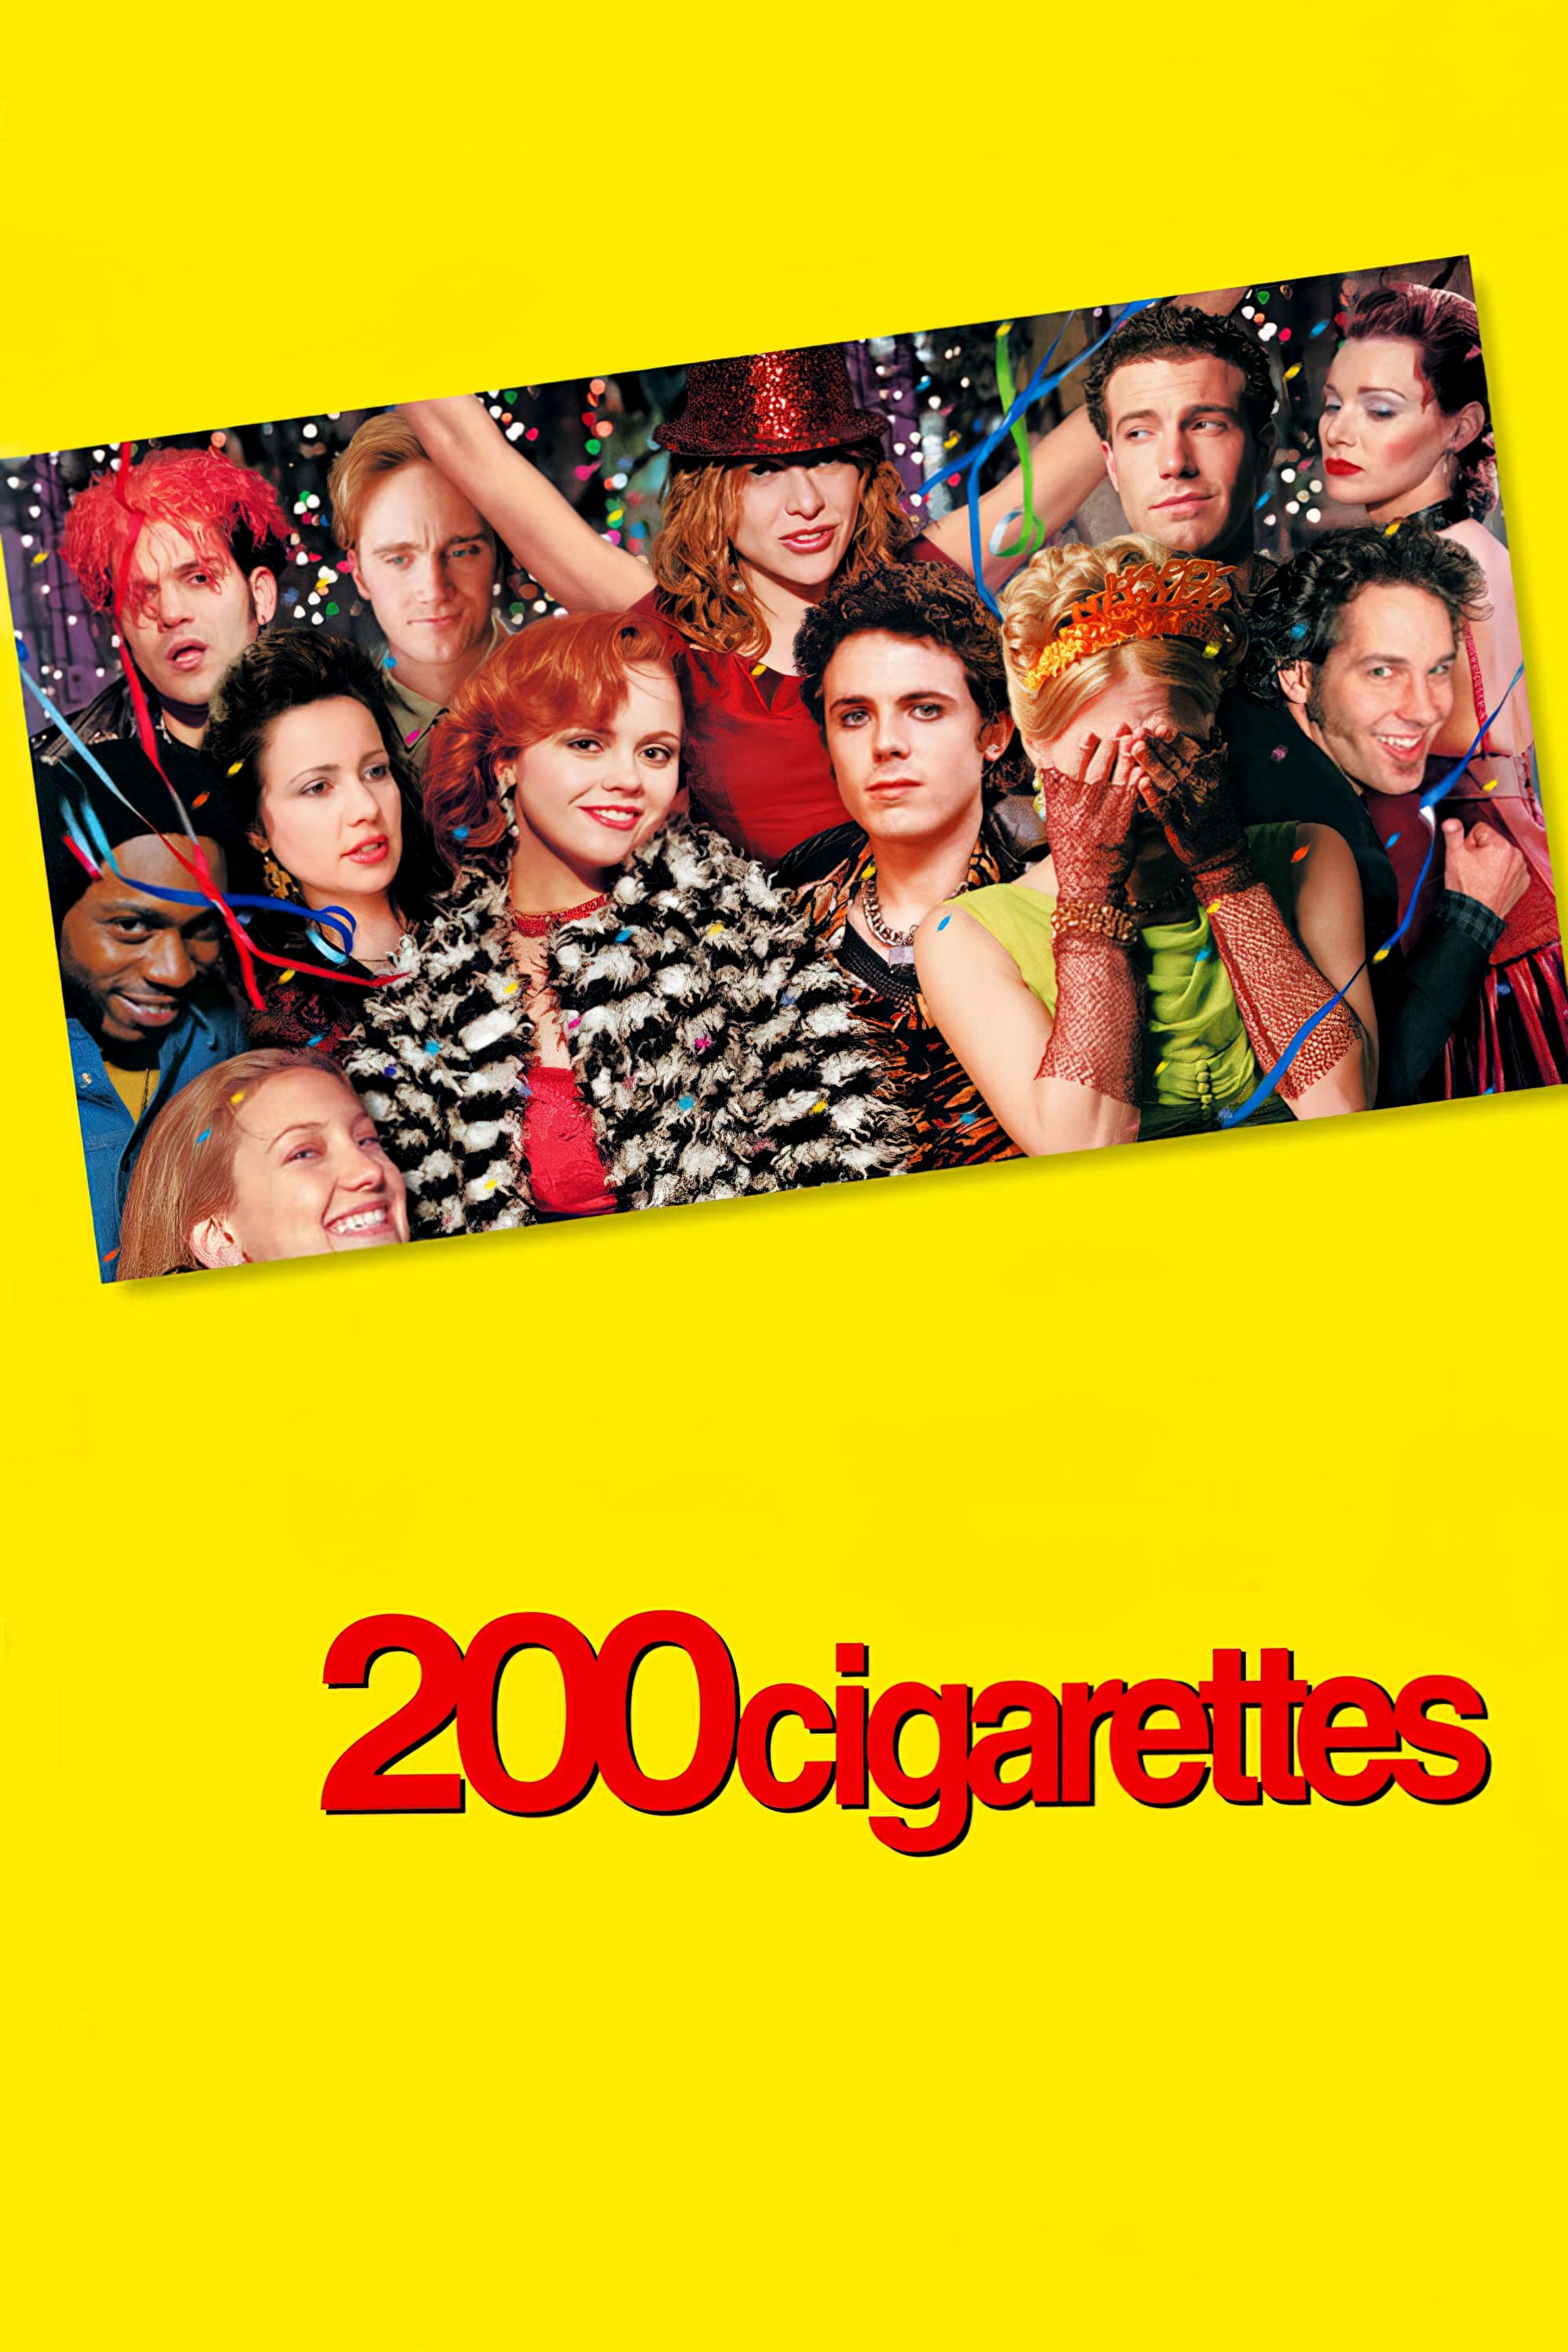 200 Cigarettes